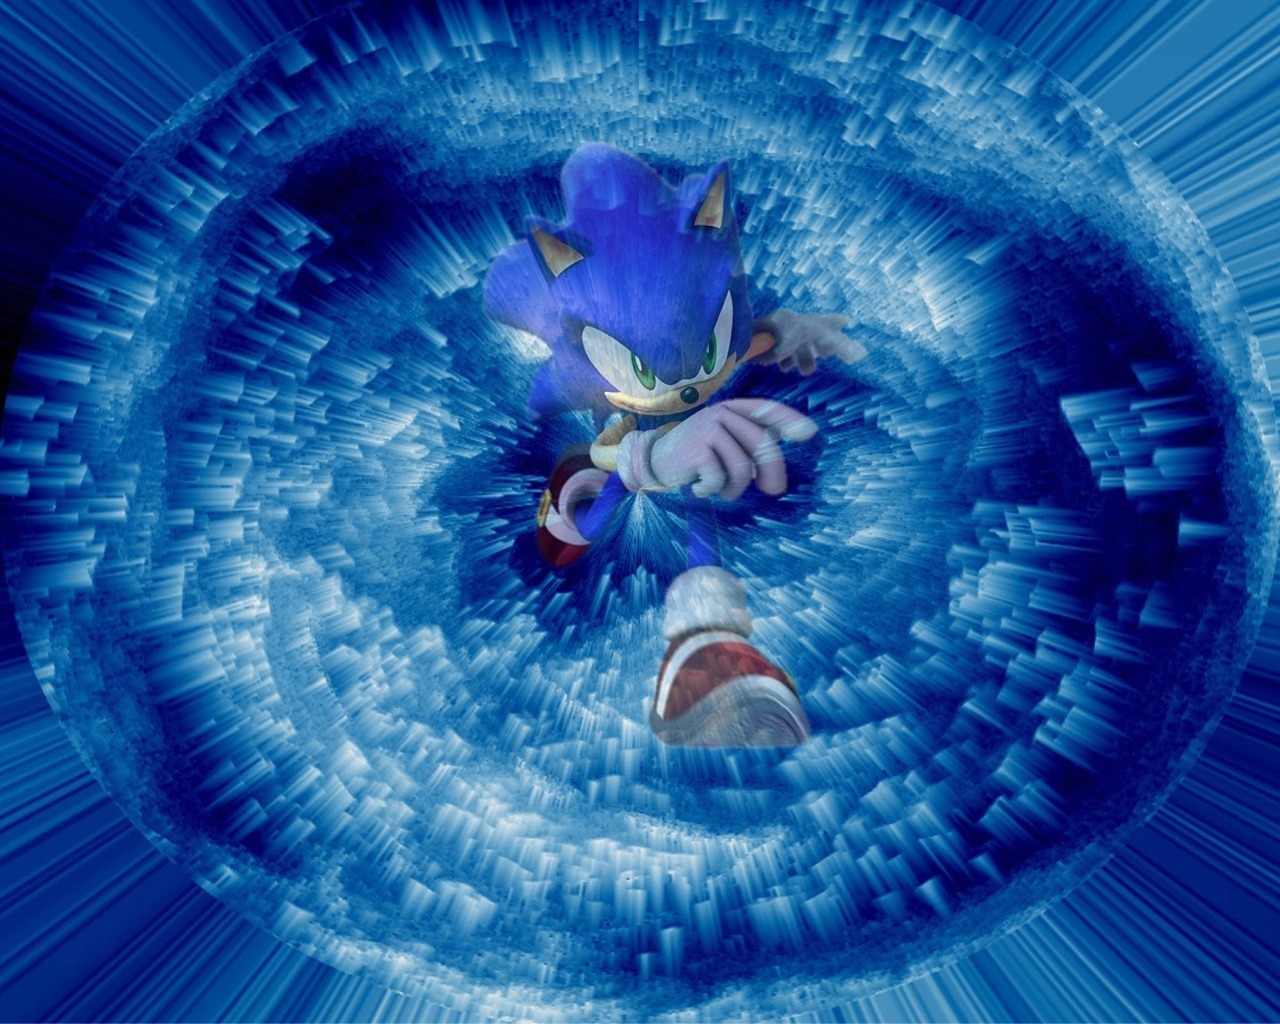 Sonic Wallpaper The Hedgehog Fan Art